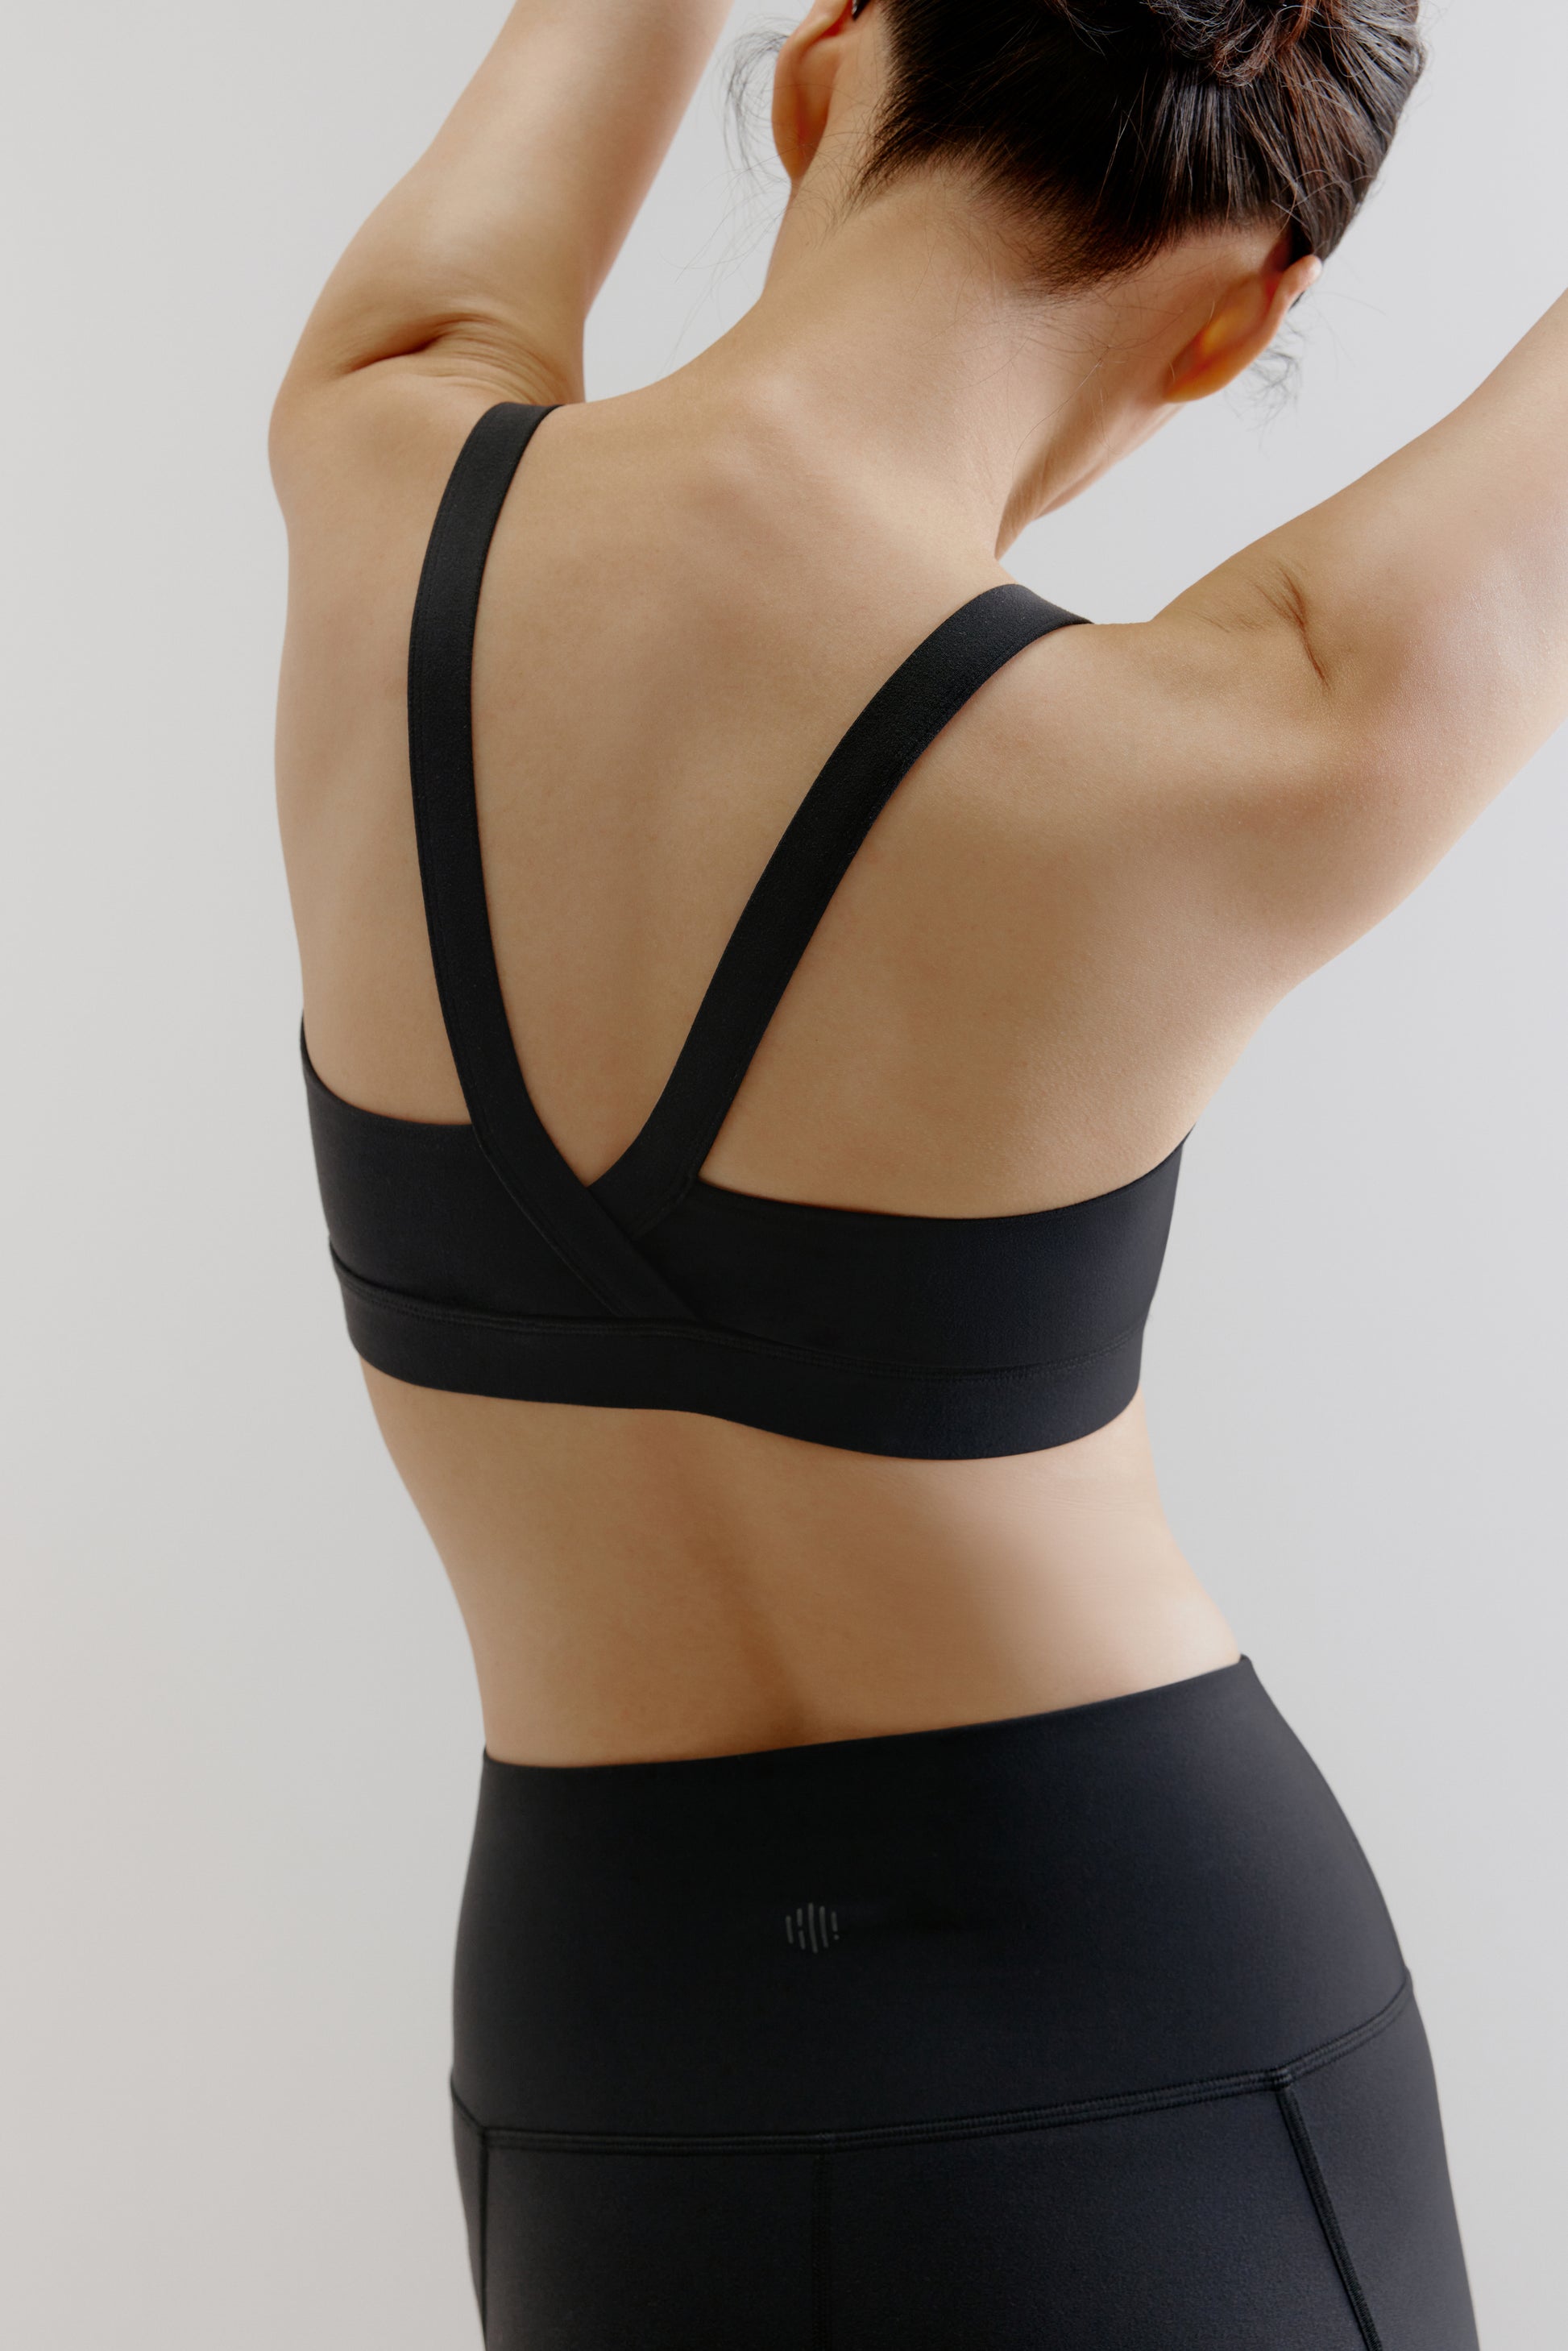 back of woman in black sports bra